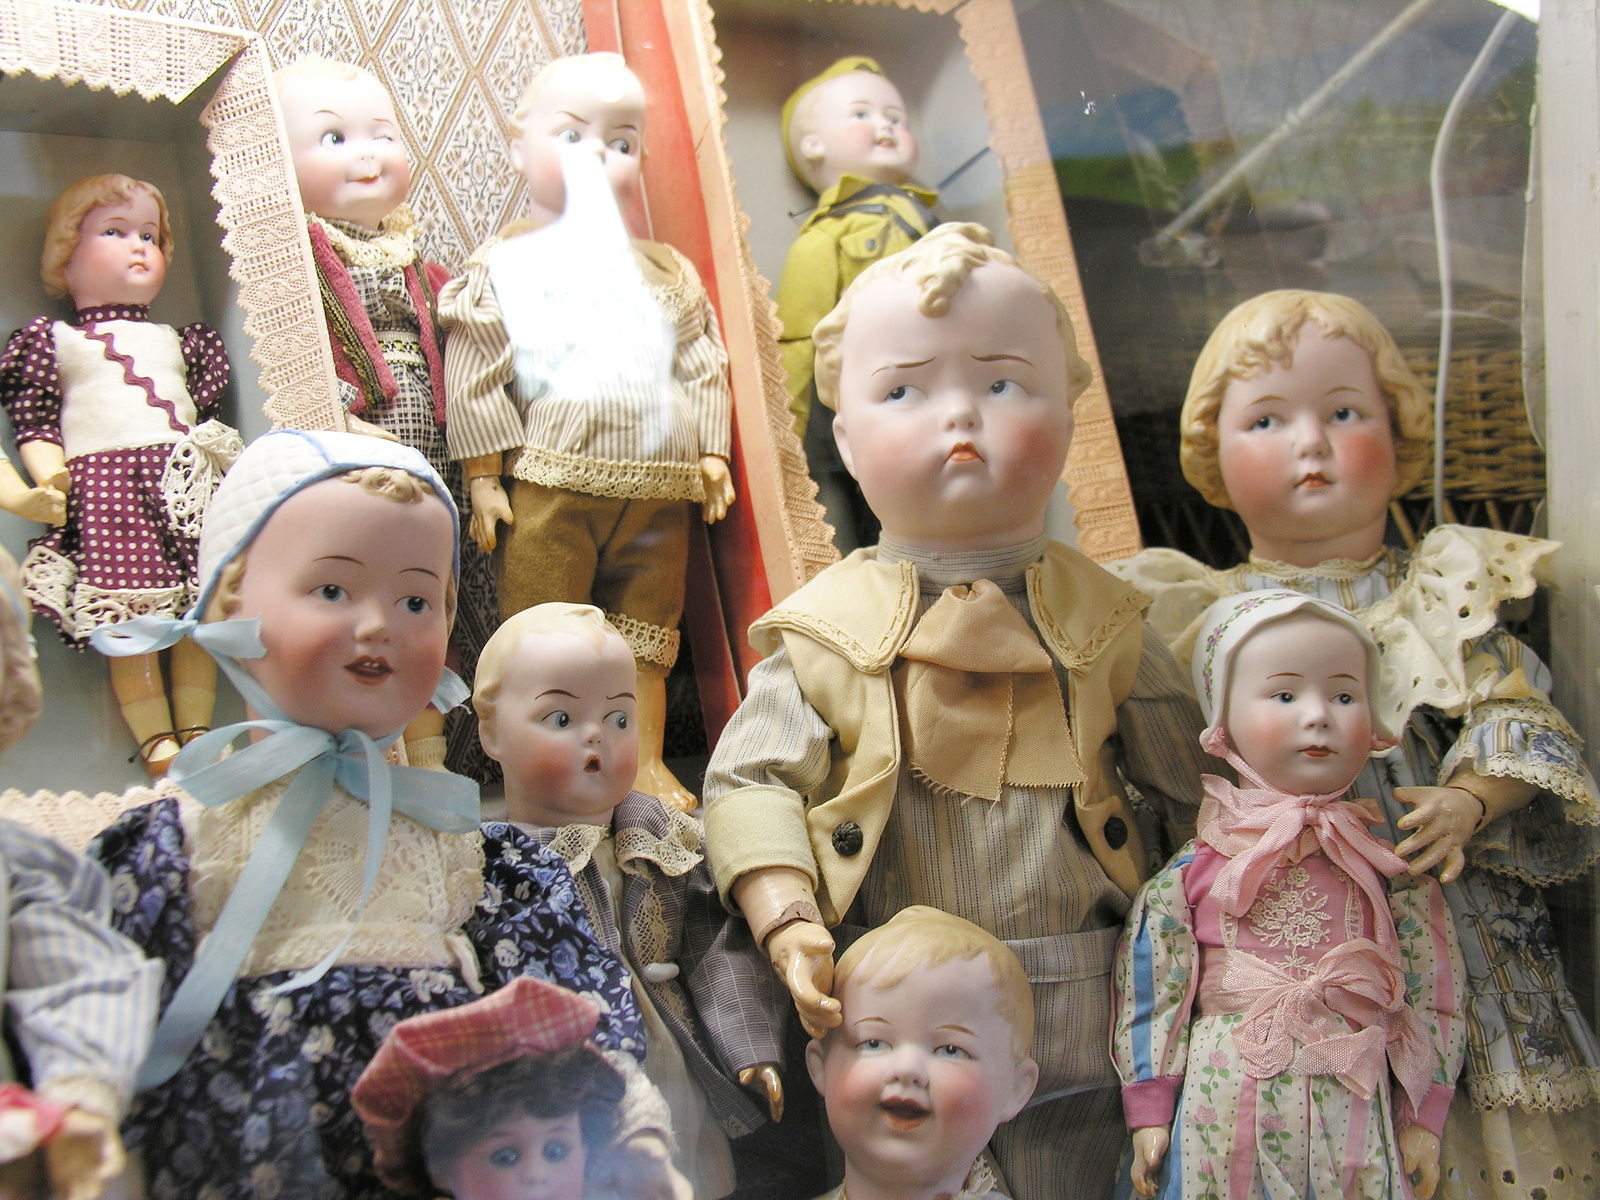 FOTO: Bydžovské muzeum hraček láká i na robotické panenky staré 150 let -  Hradecký deník